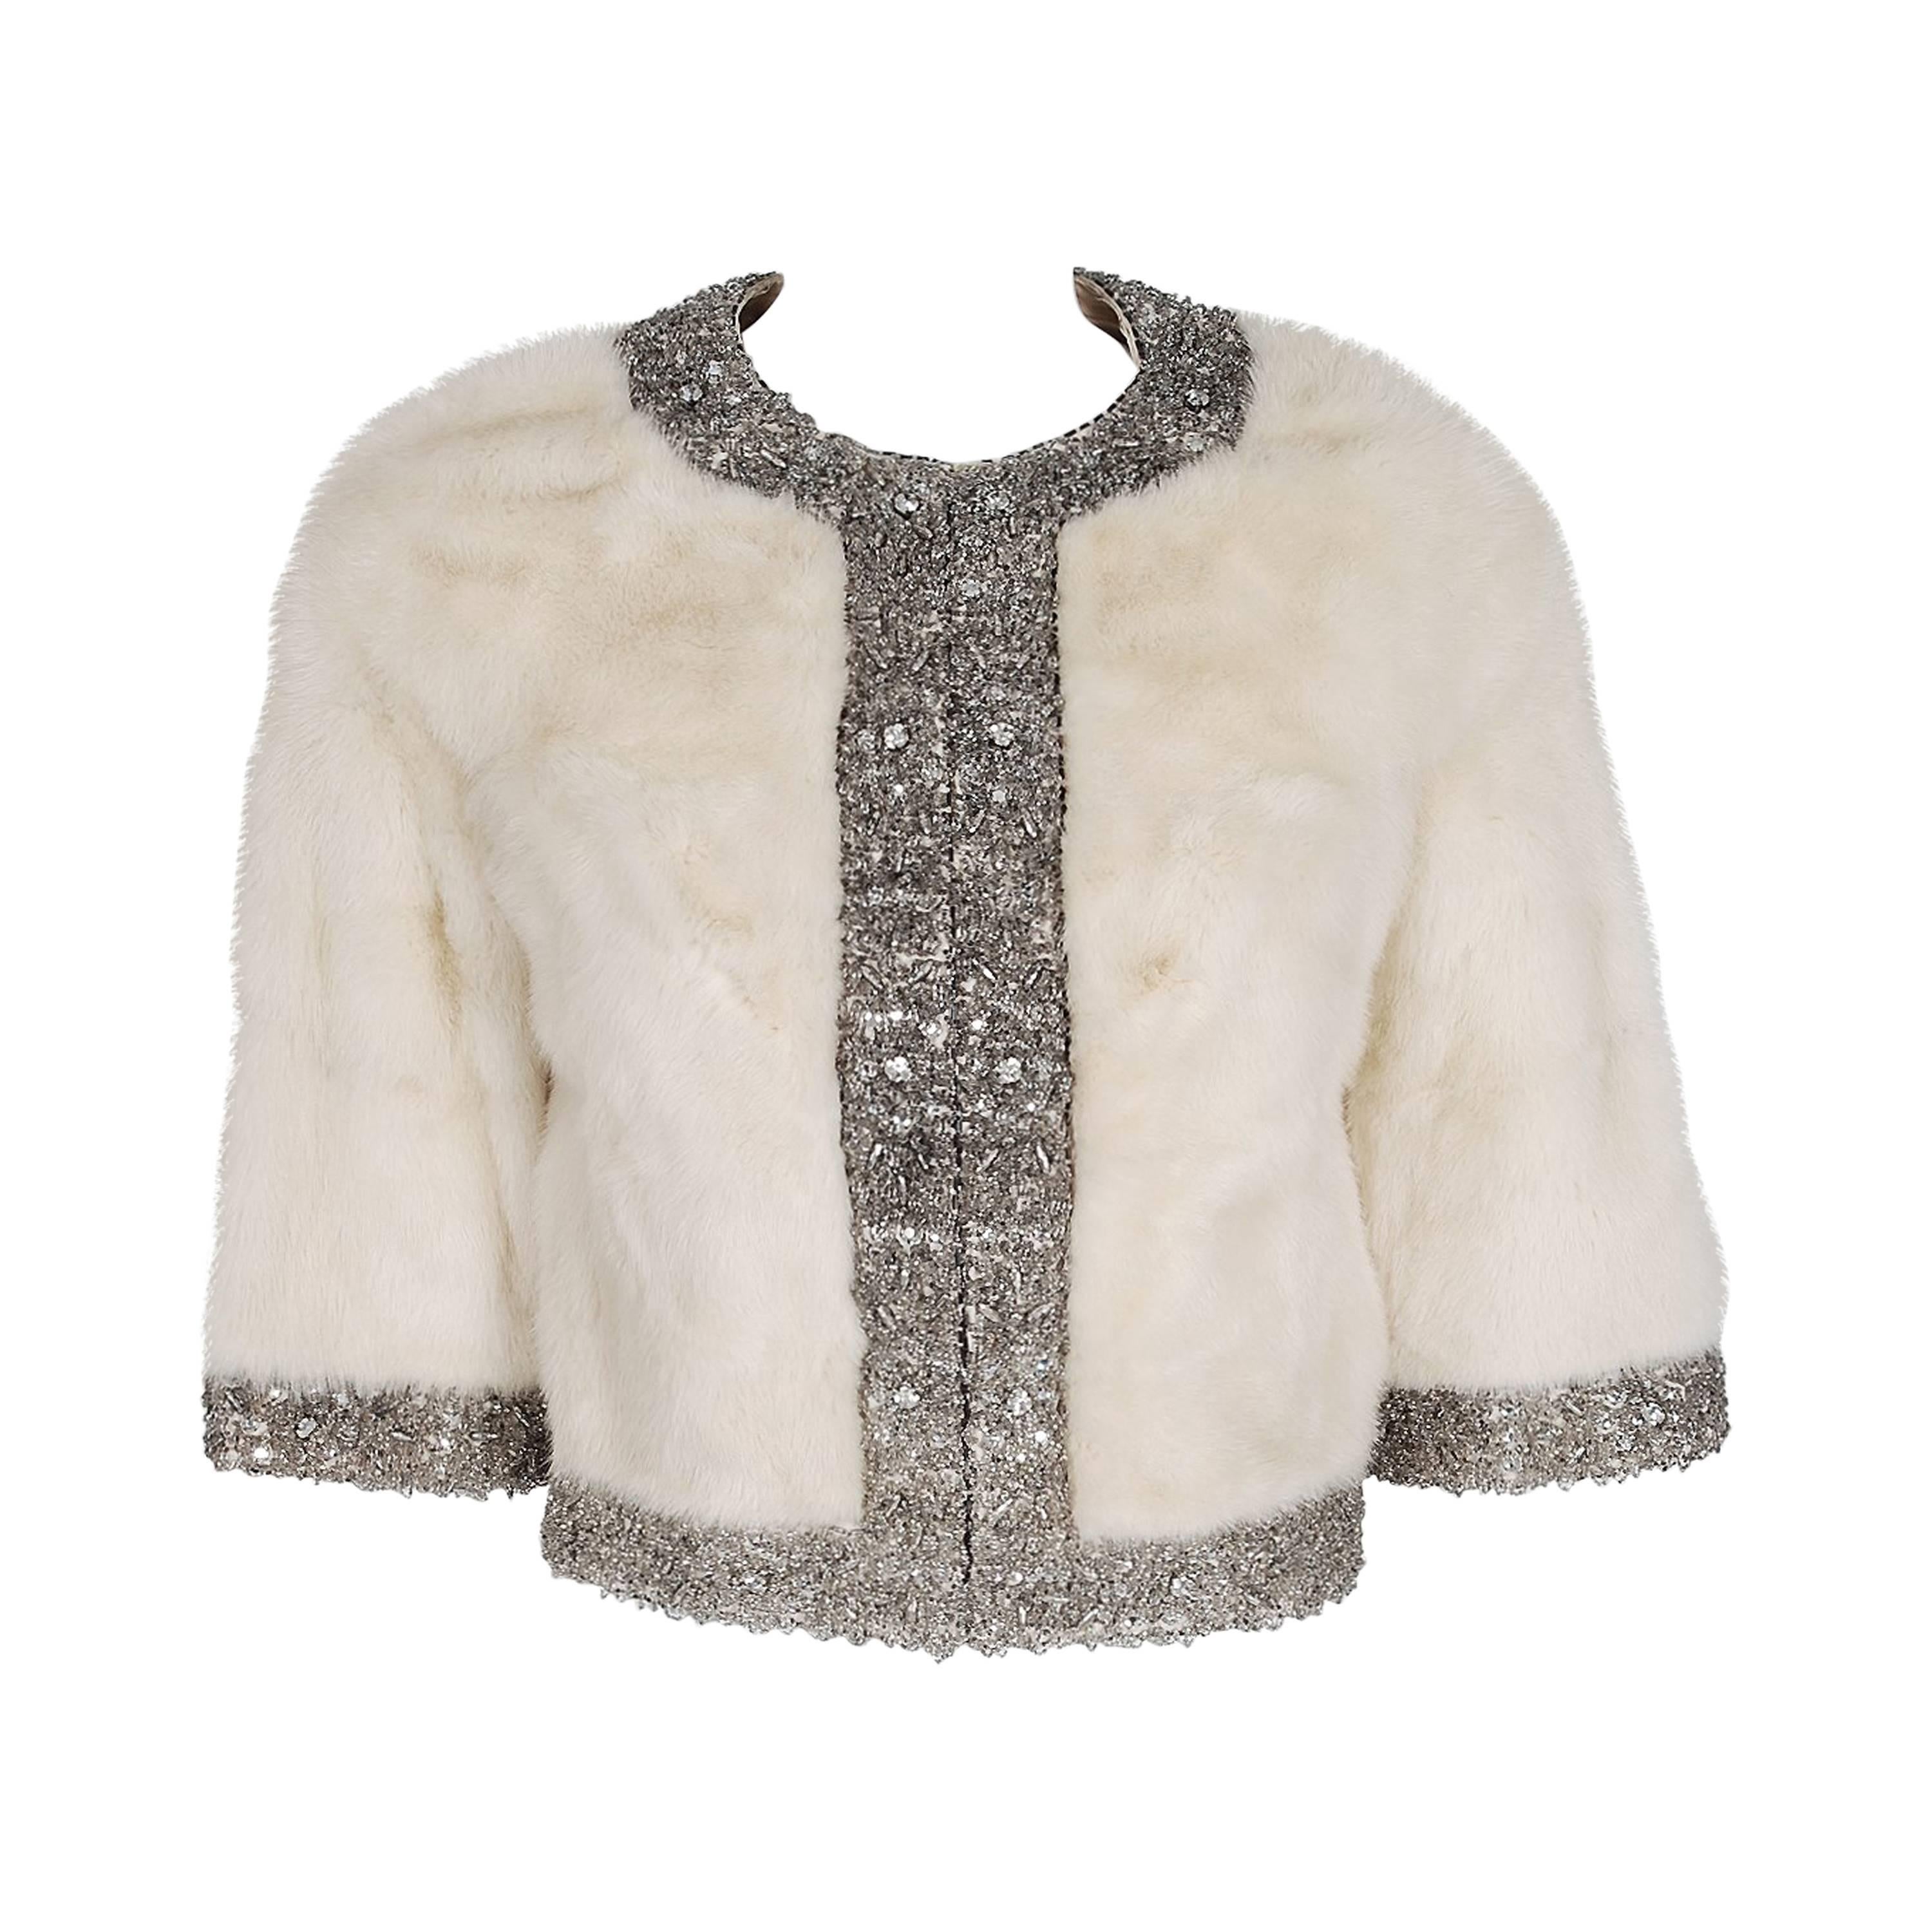 1950's Rhinestone Crystal Beaded Ivory-White Mink Fur Cropped Bolero Jacket